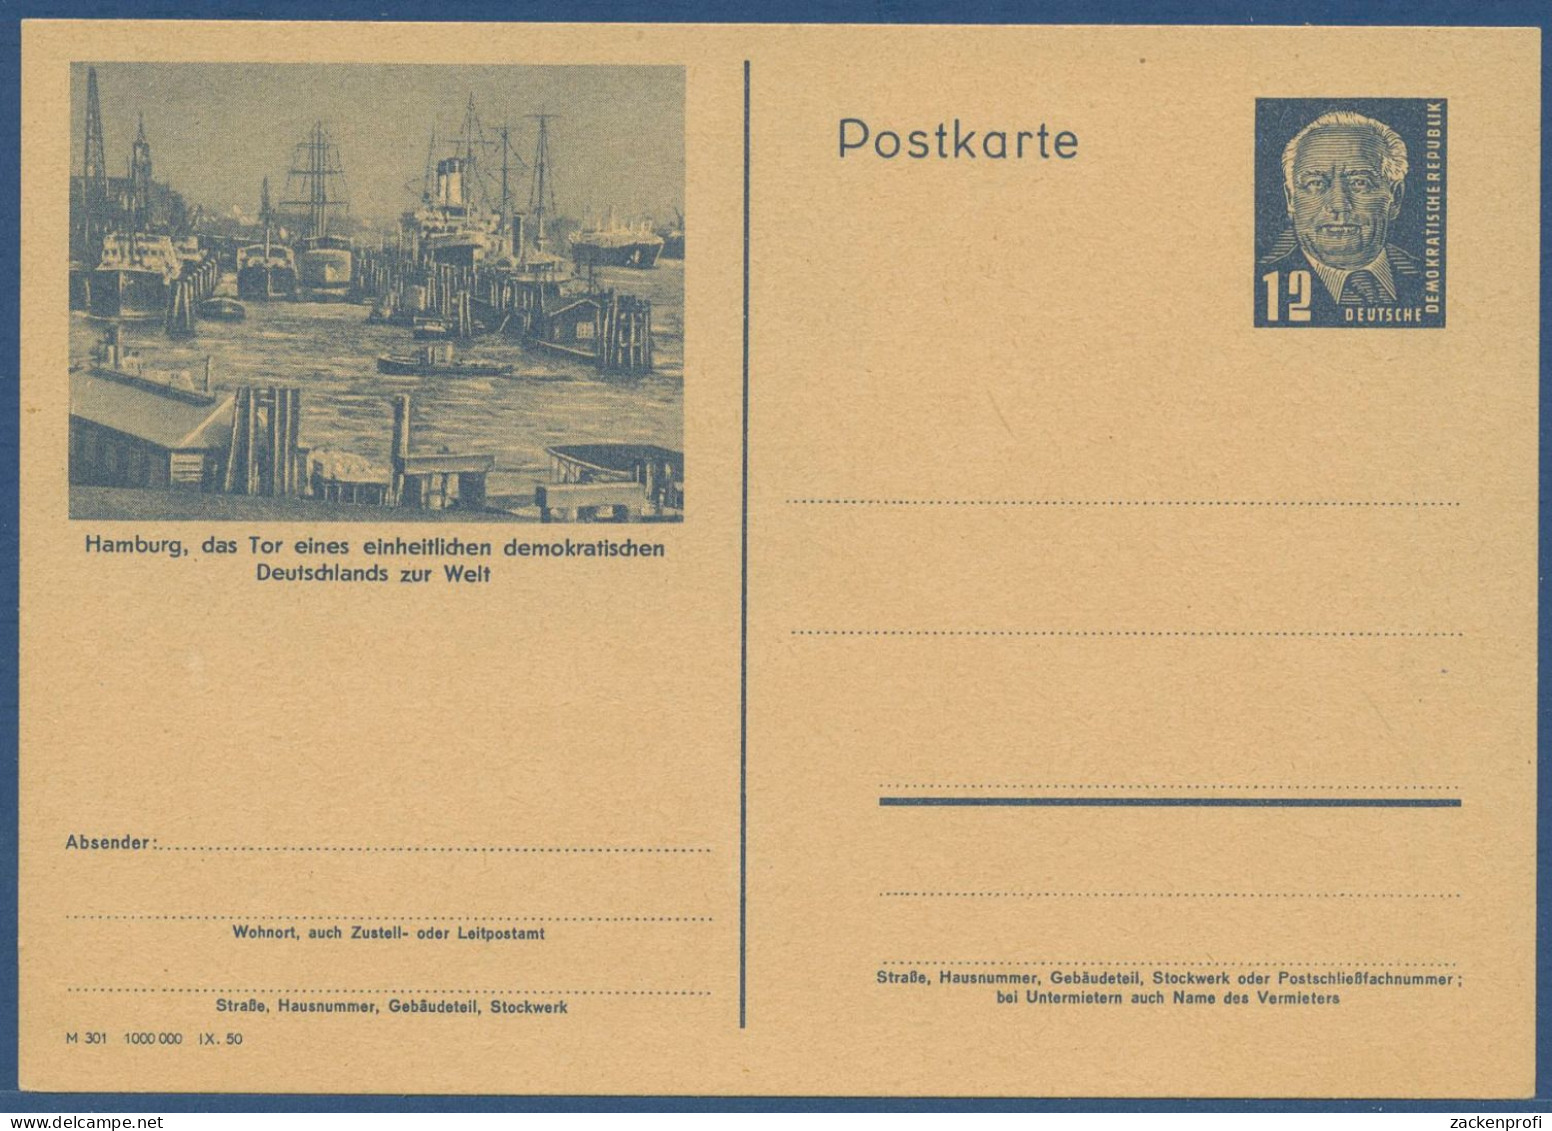 DDR 1950 Wilh. Pieck Bildpostkarte Hamburg Hafen P 47/02 Ungebraucht (X40943) - Postales - Nuevos